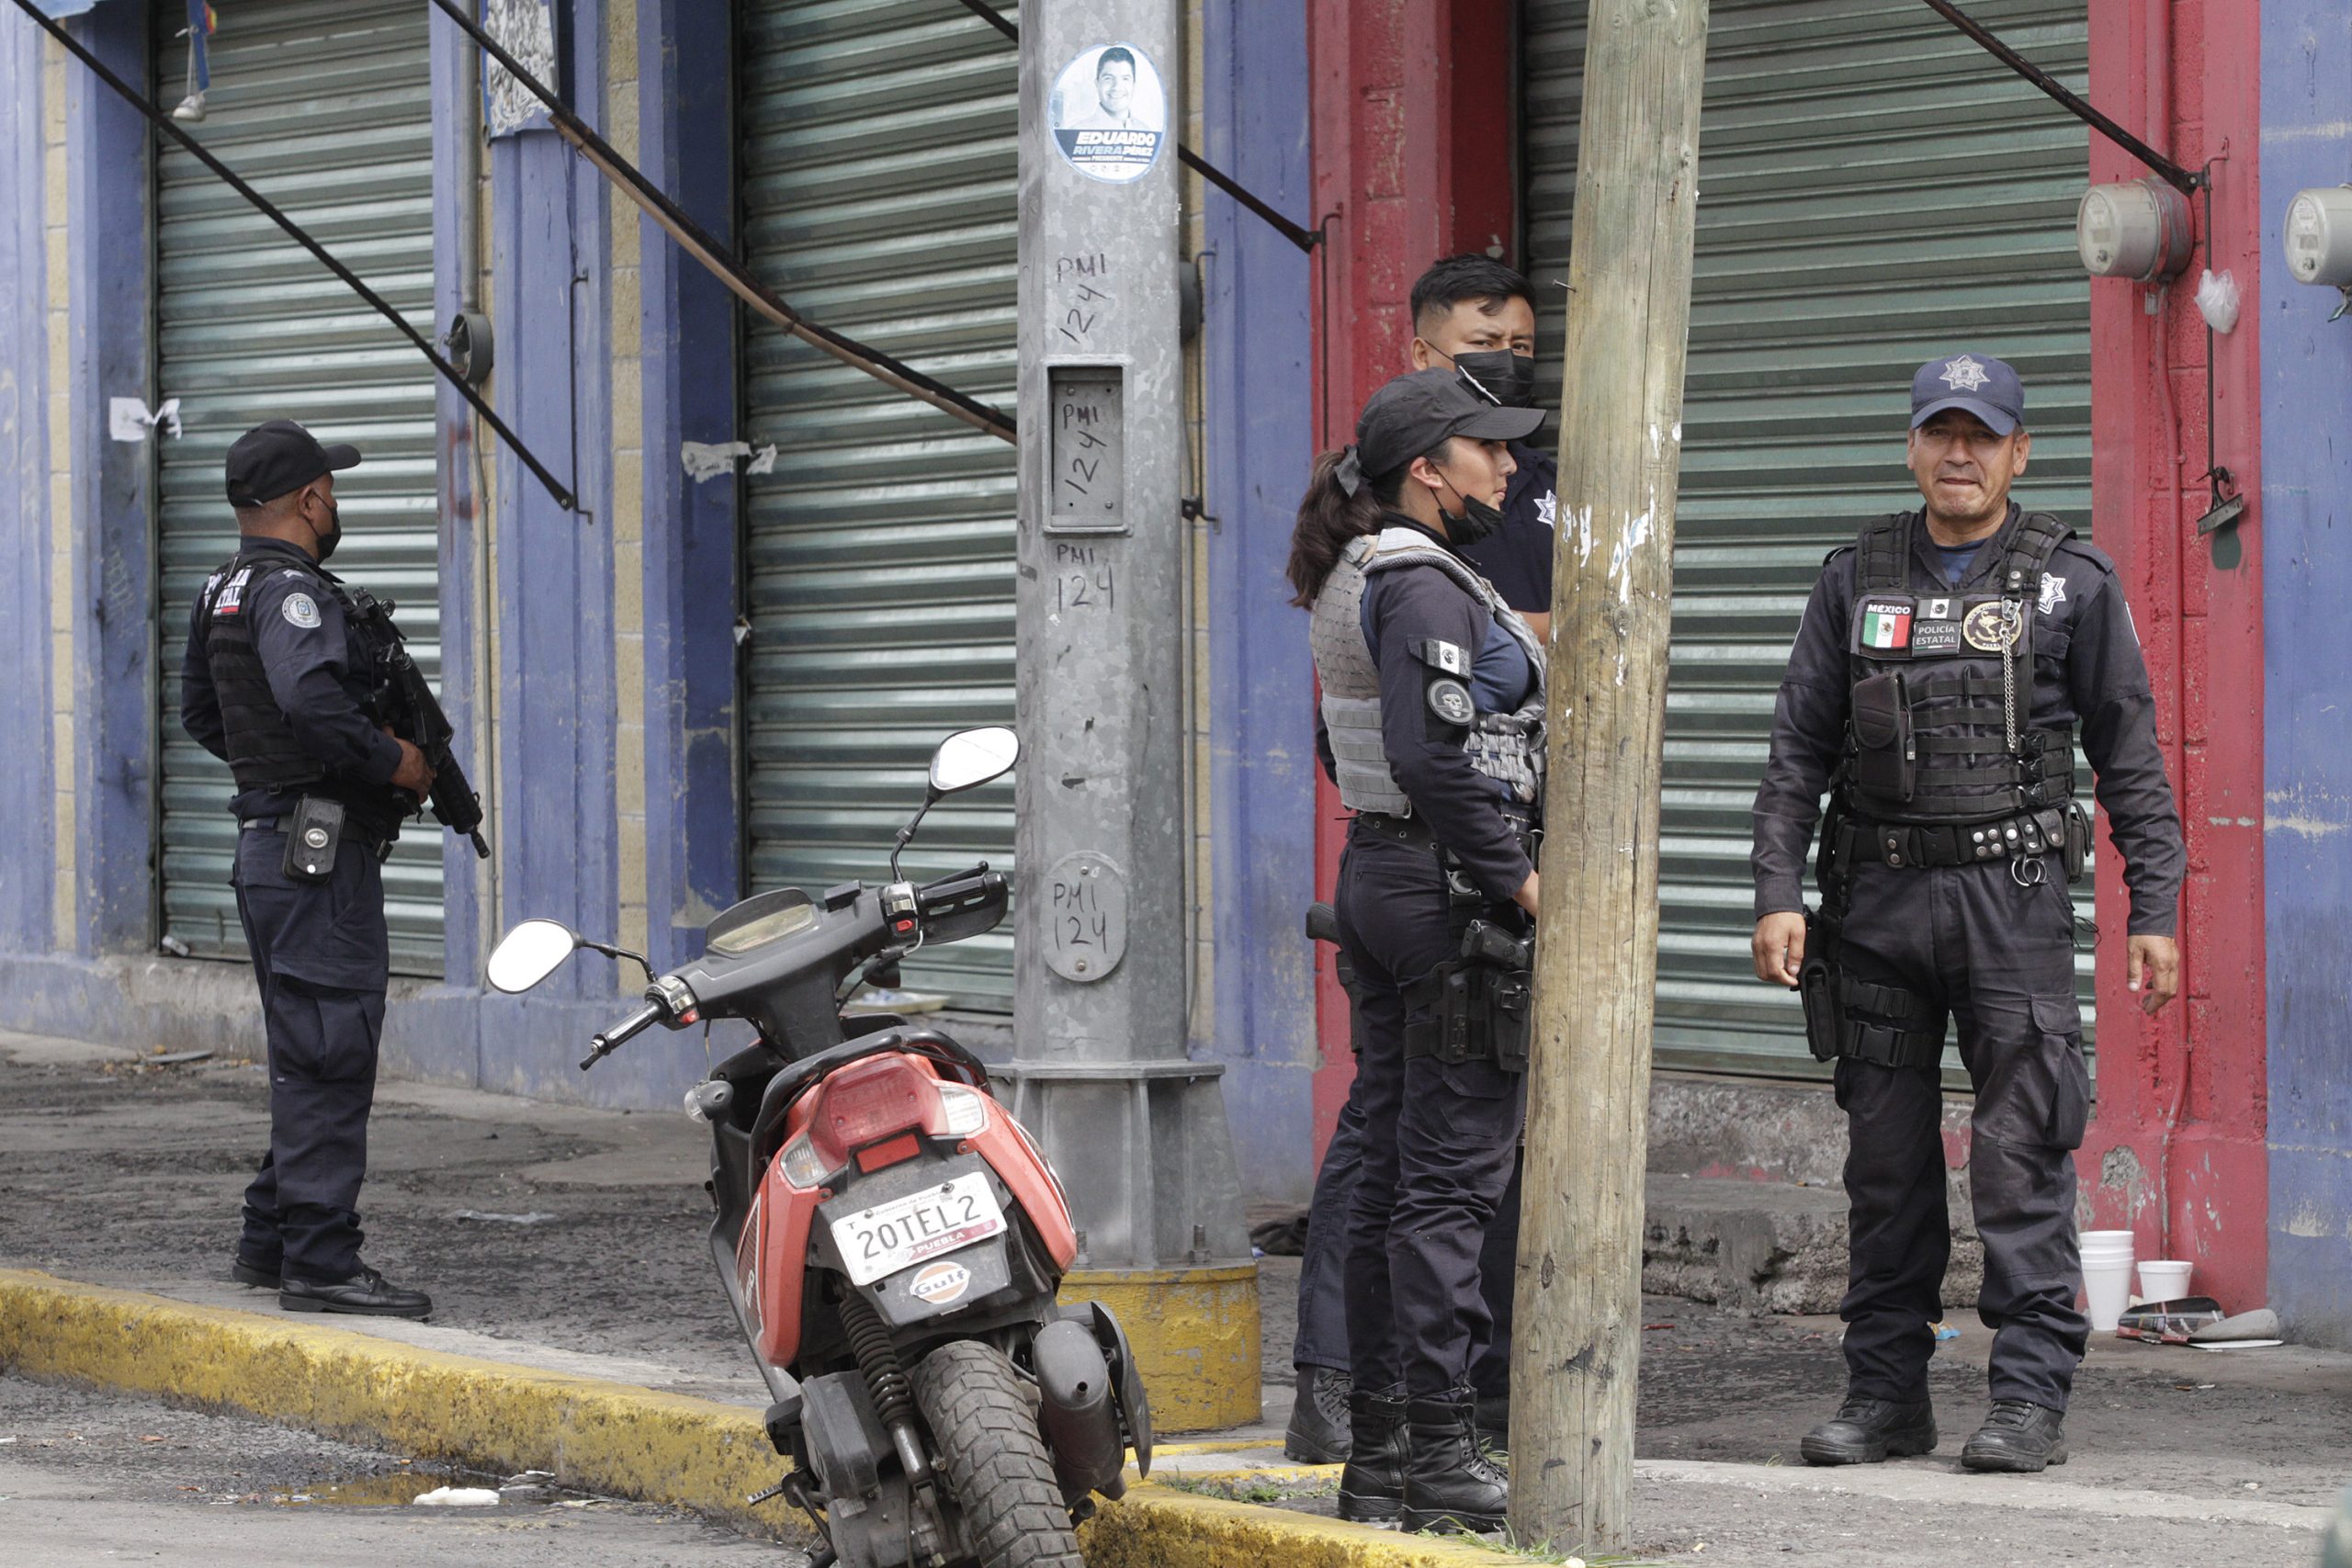 Policía de Tulcingo asesinado no contaba con exámenes de confianza, dice gobernador